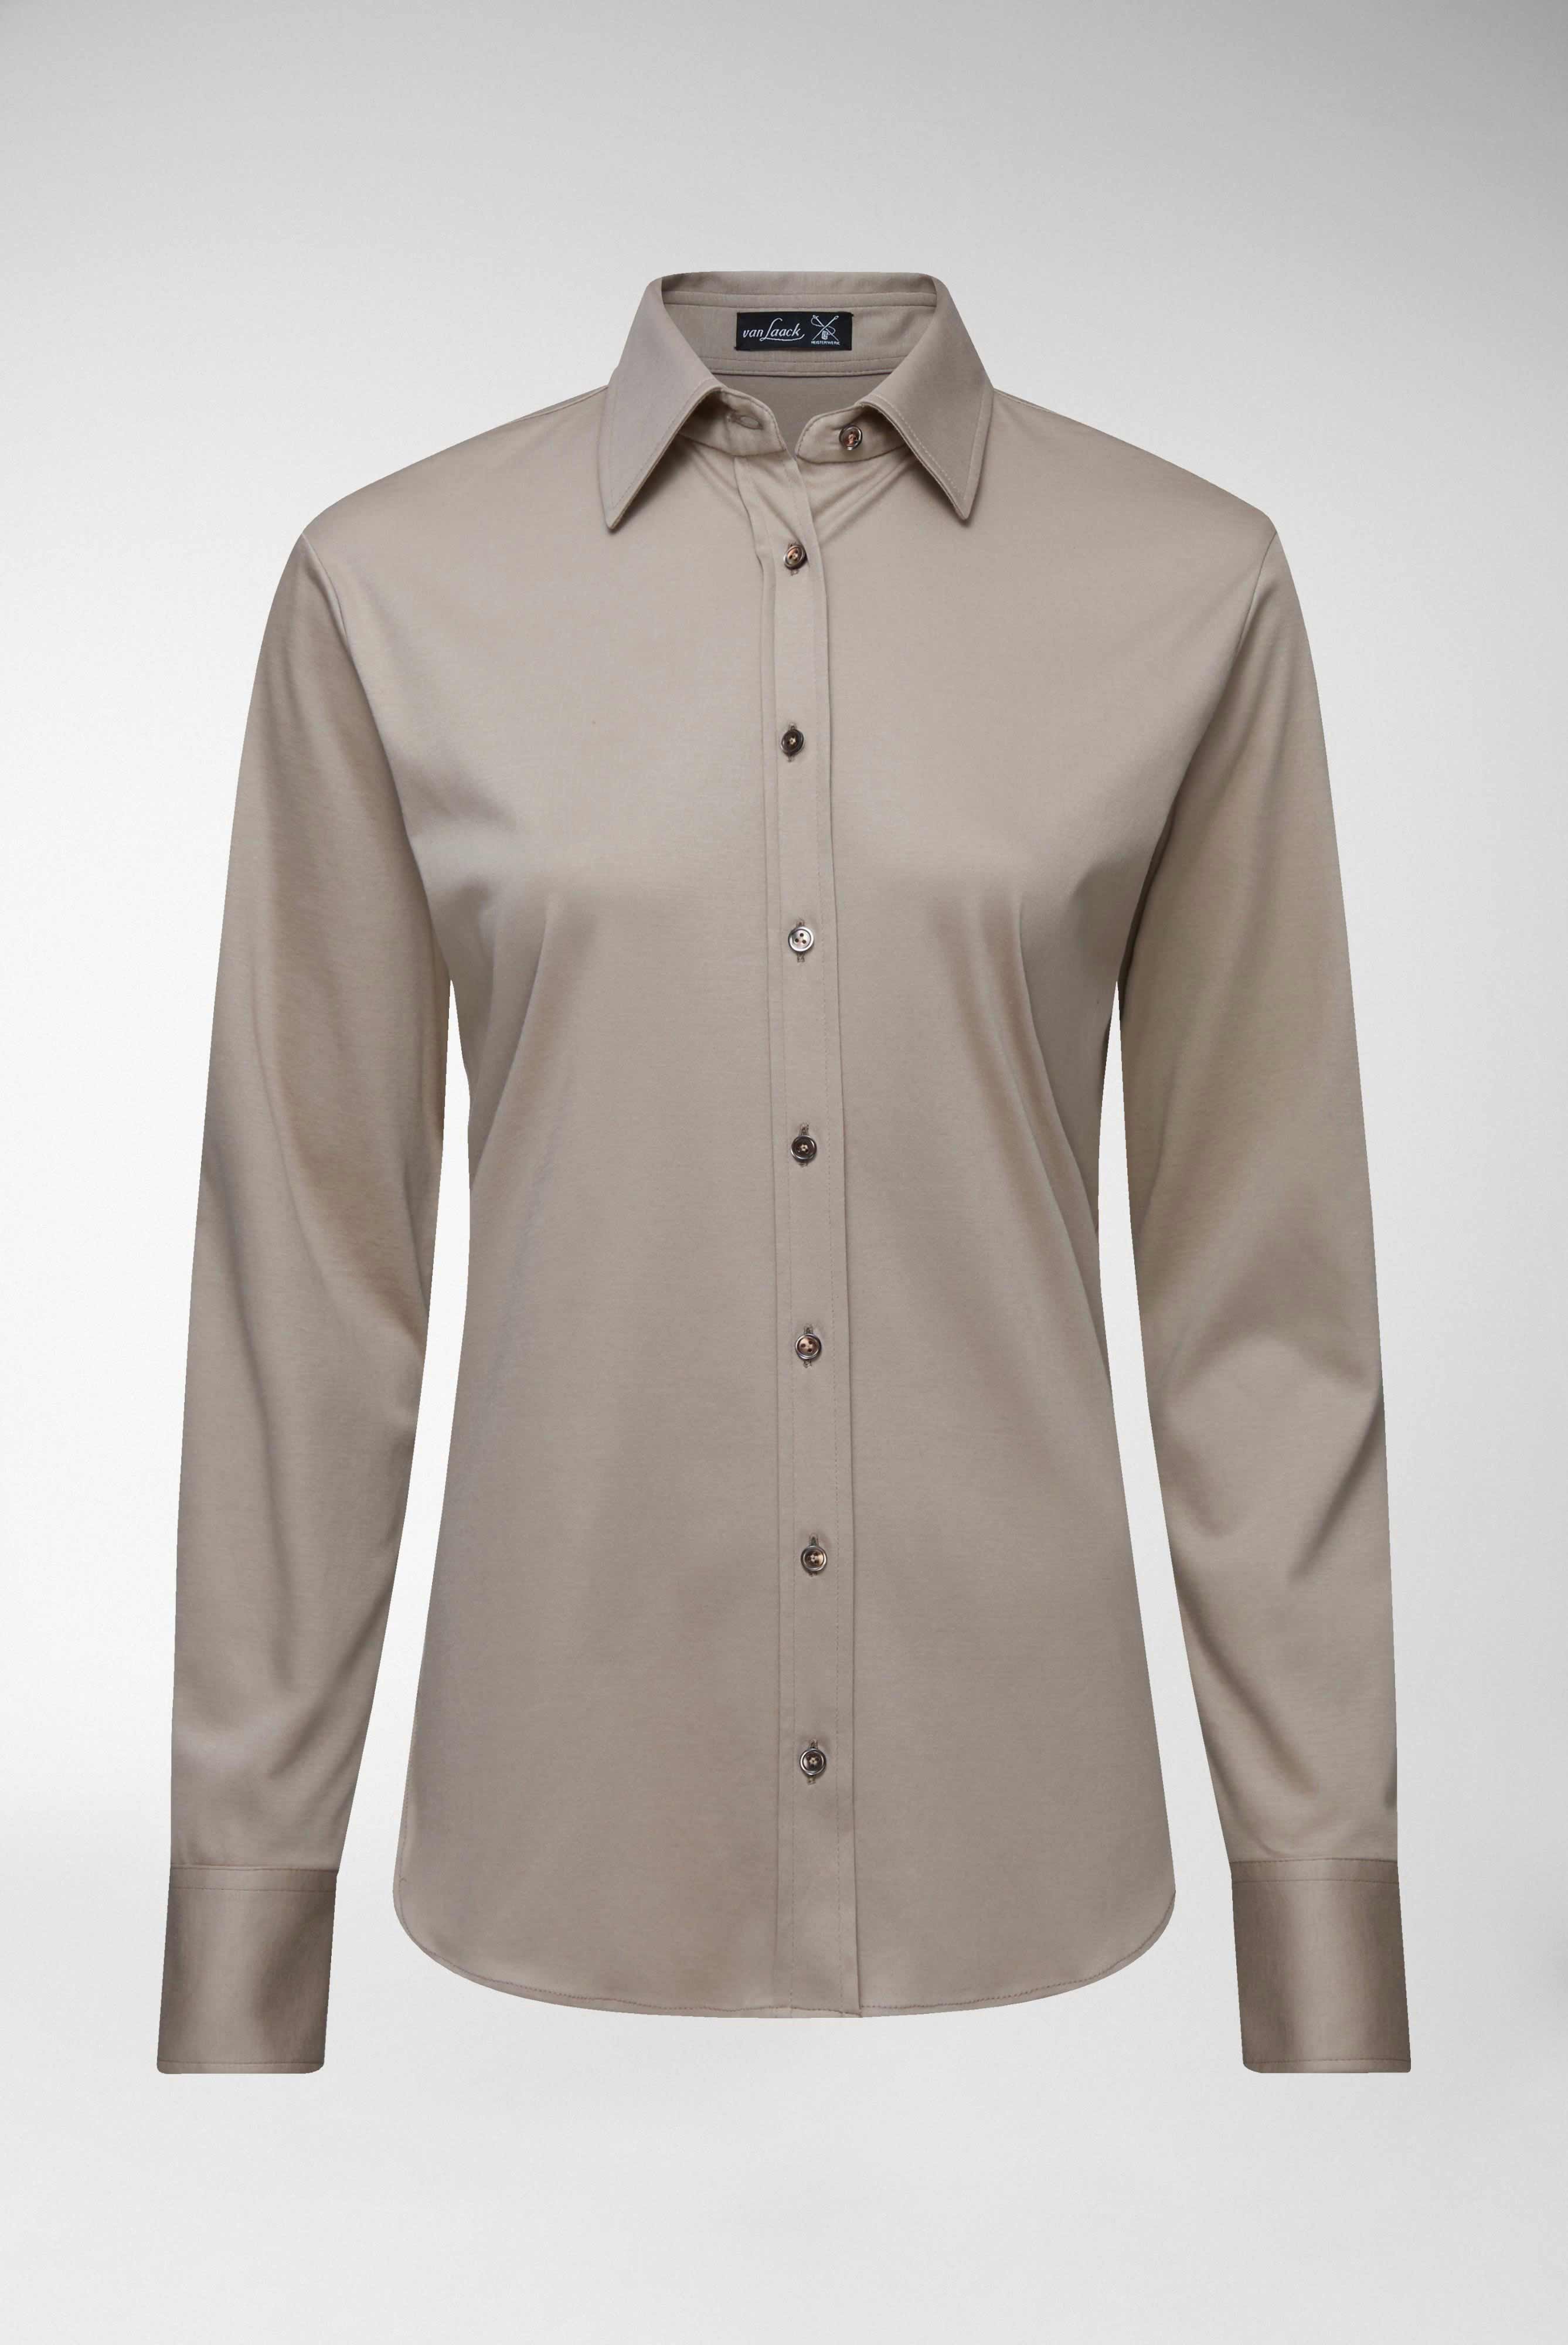 Casual Blusen+Taillierte Jersey Hemdbluse aus Schweizer Baumwolle+05.603Y..180031.140.32